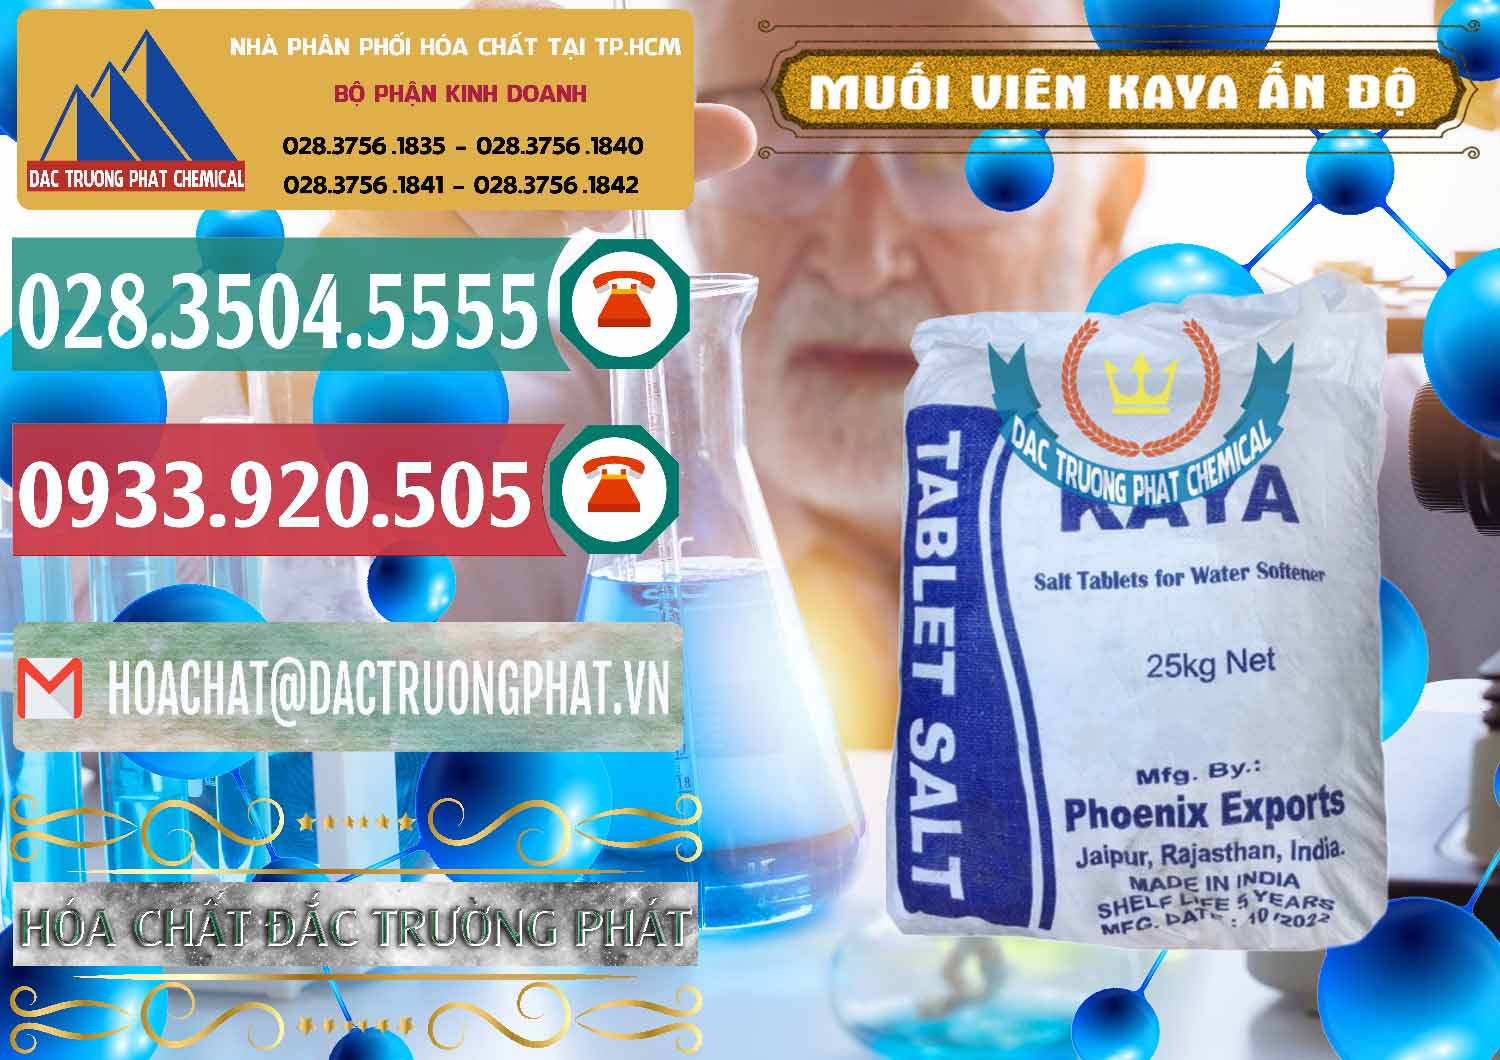 Cty bán ( cung cấp ) Muối NaCL – Sodium Chloride Dạng Viên Tablets Kaya Ấn Độ India - 0368 - Chuyên cung cấp - phân phối hóa chất tại TP.HCM - muabanhoachat.vn